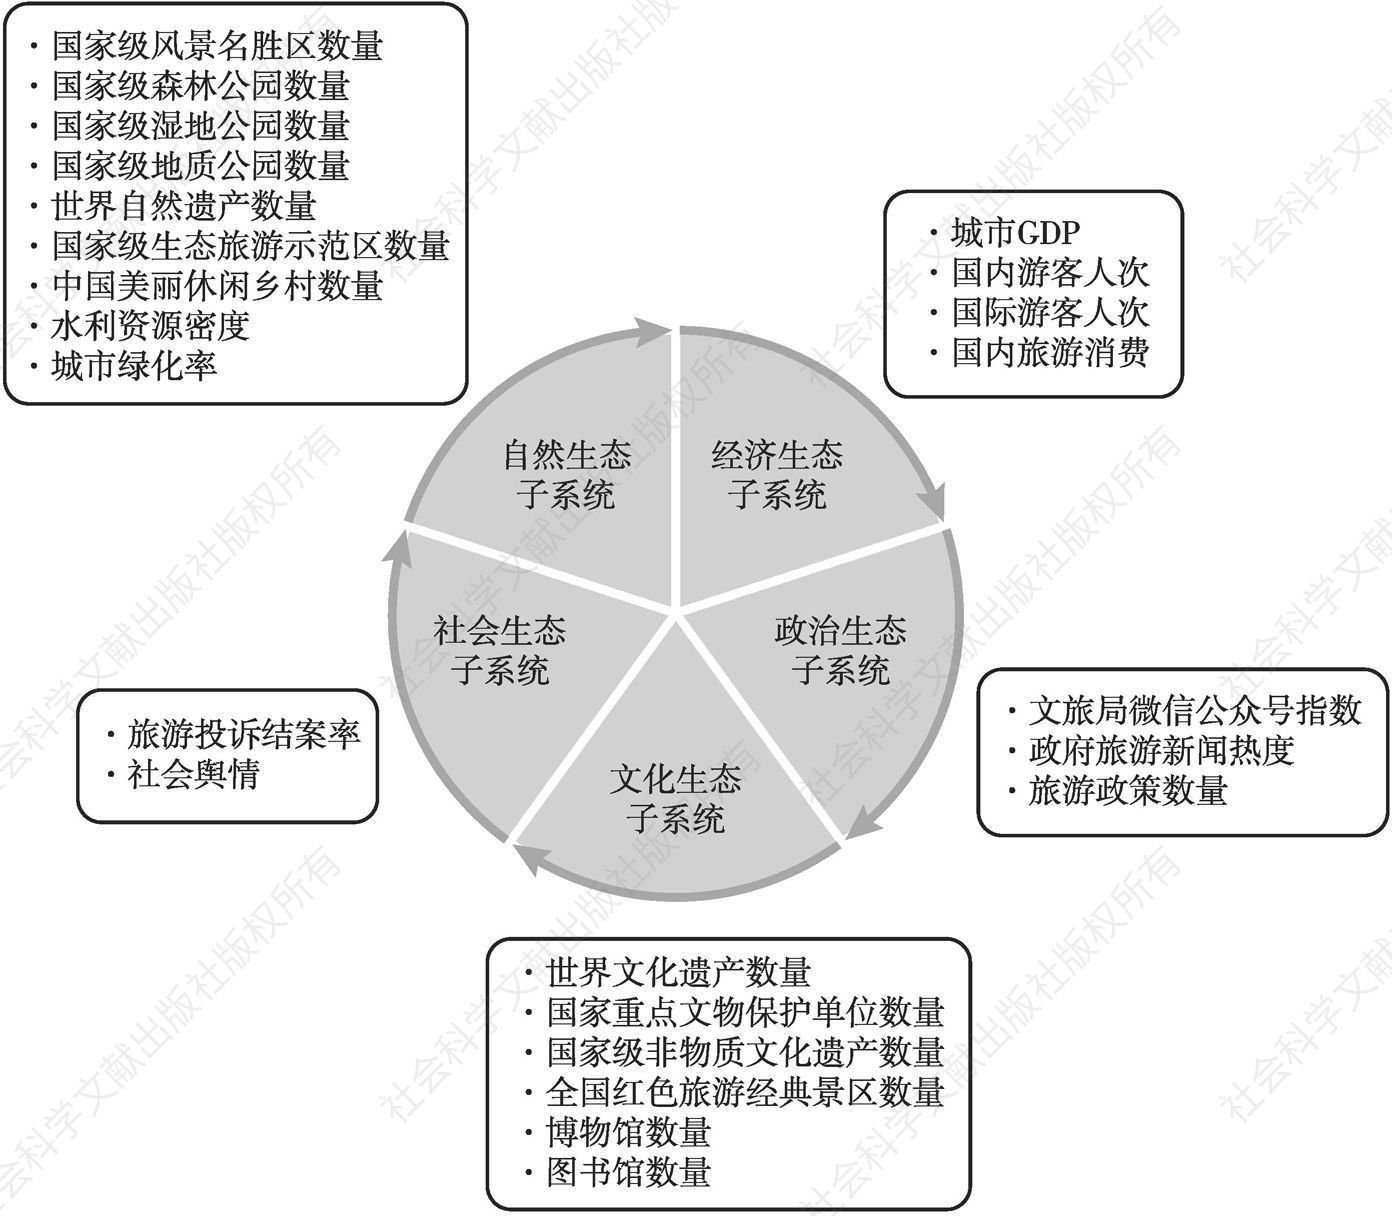 图2 中国生态旅游发展具体指标构建